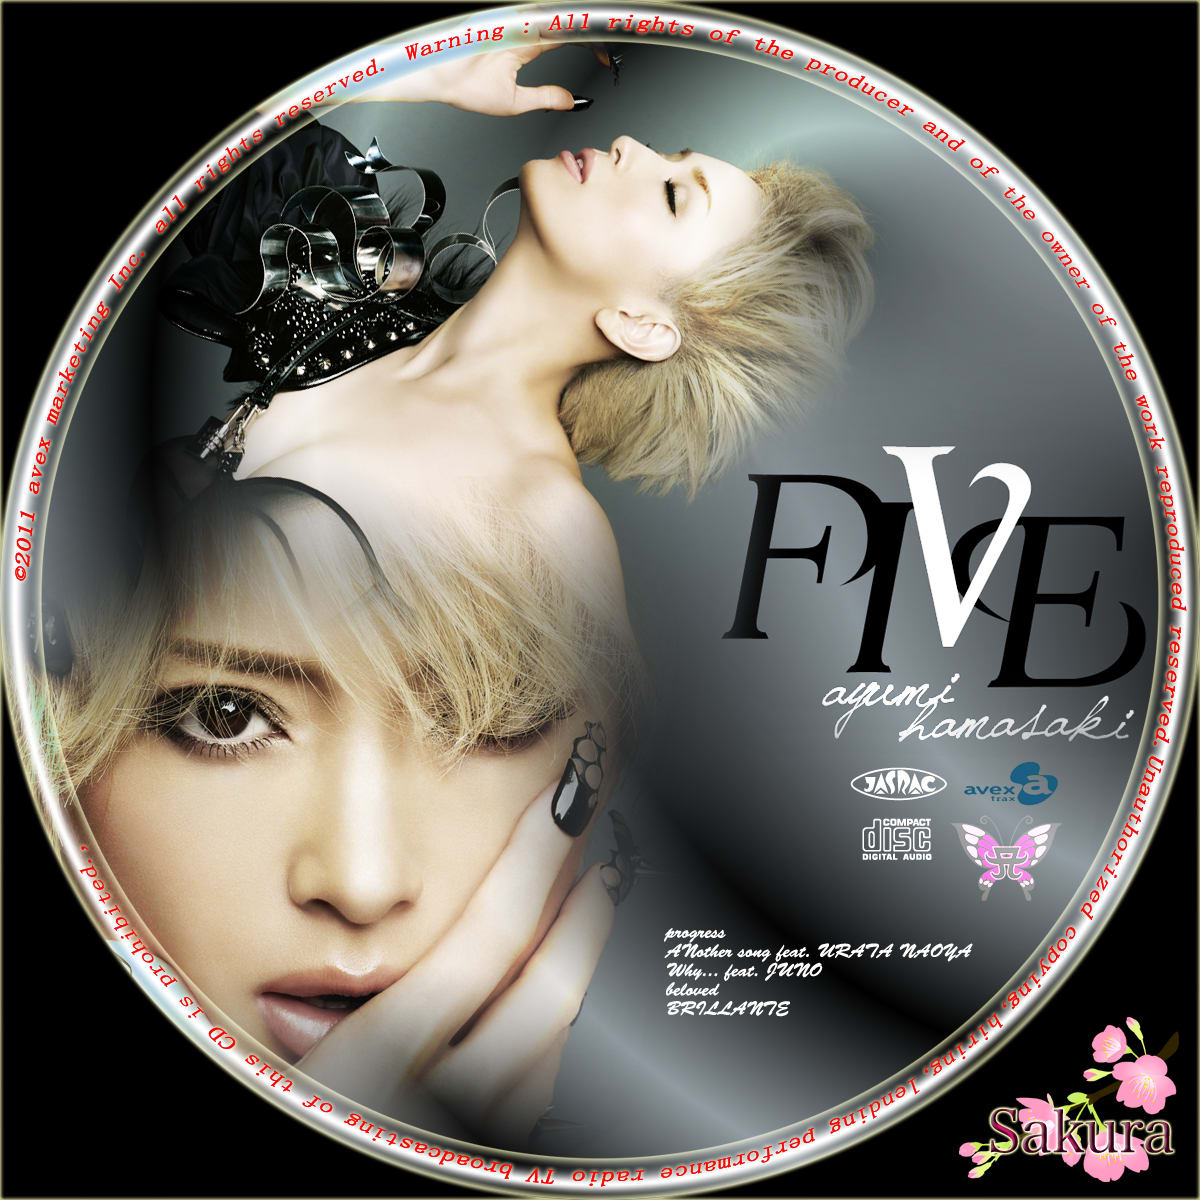 浜崎あゆみ / NEW MINI ALBUM 『FIVE』 - sakuralabel